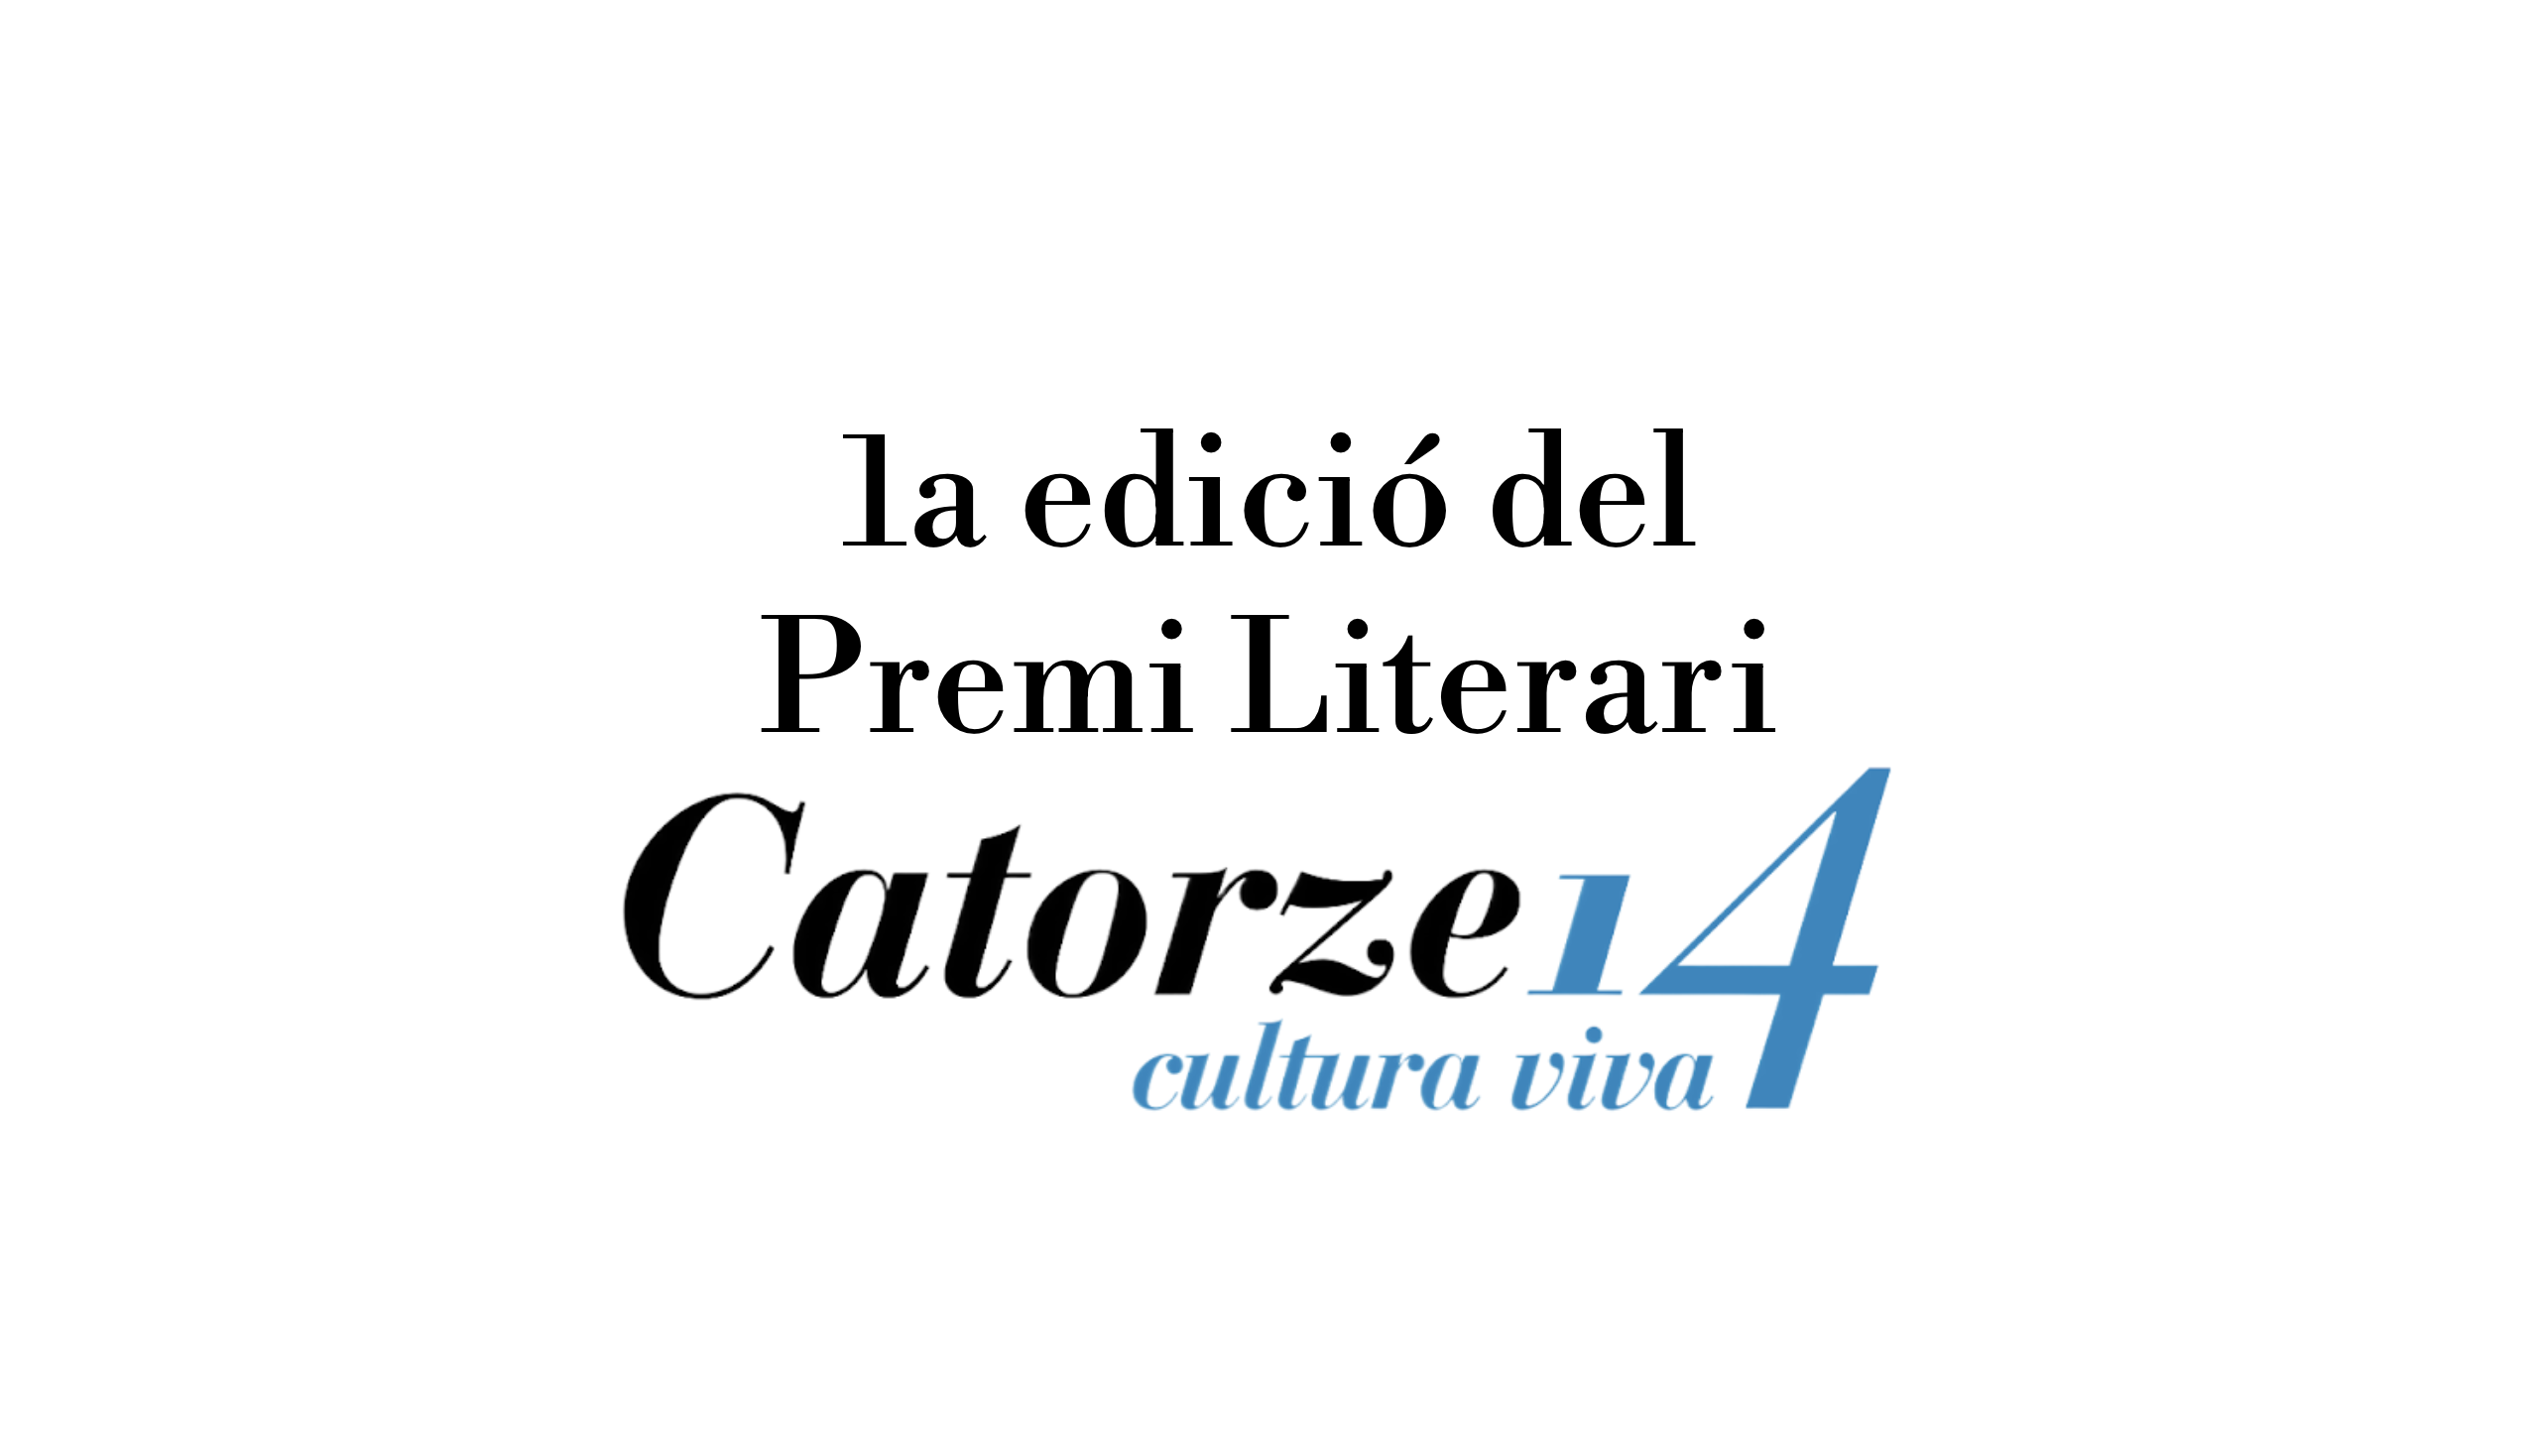 Catorze presenta el Premi Literari Catorze, dotat en 600€.